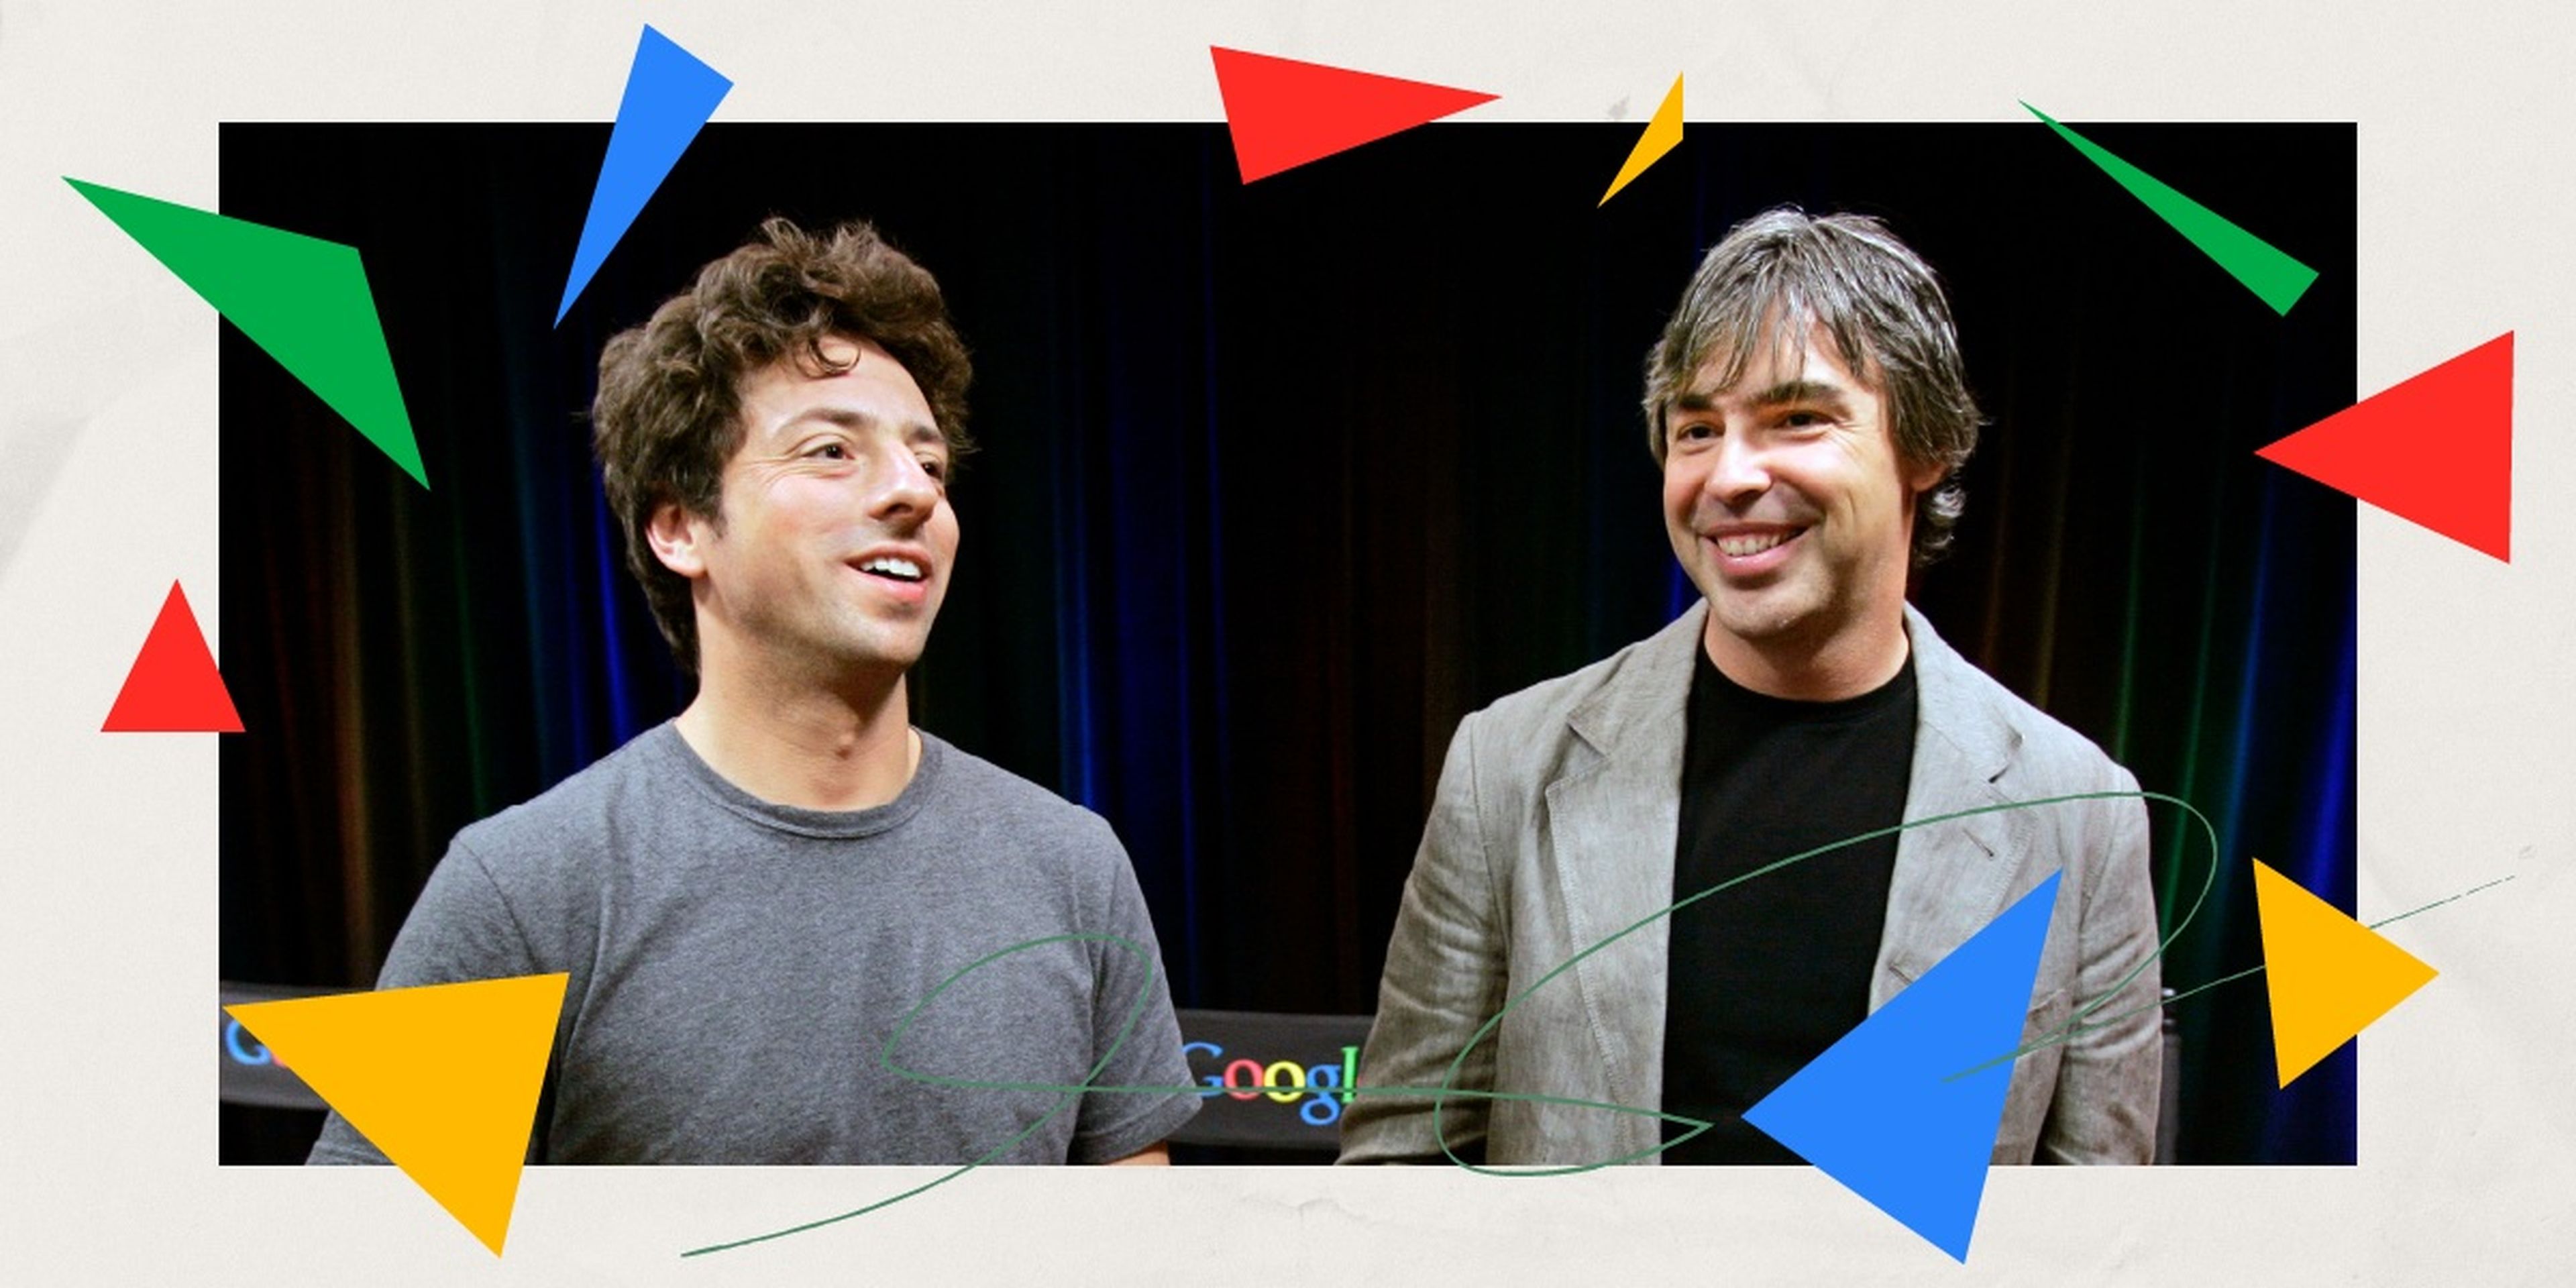 Sergey Brin y Larry Page, cofundadores de Google, han donado millones a obras benéficas a través de sus fundaciones, pero de formas muy distintas. 